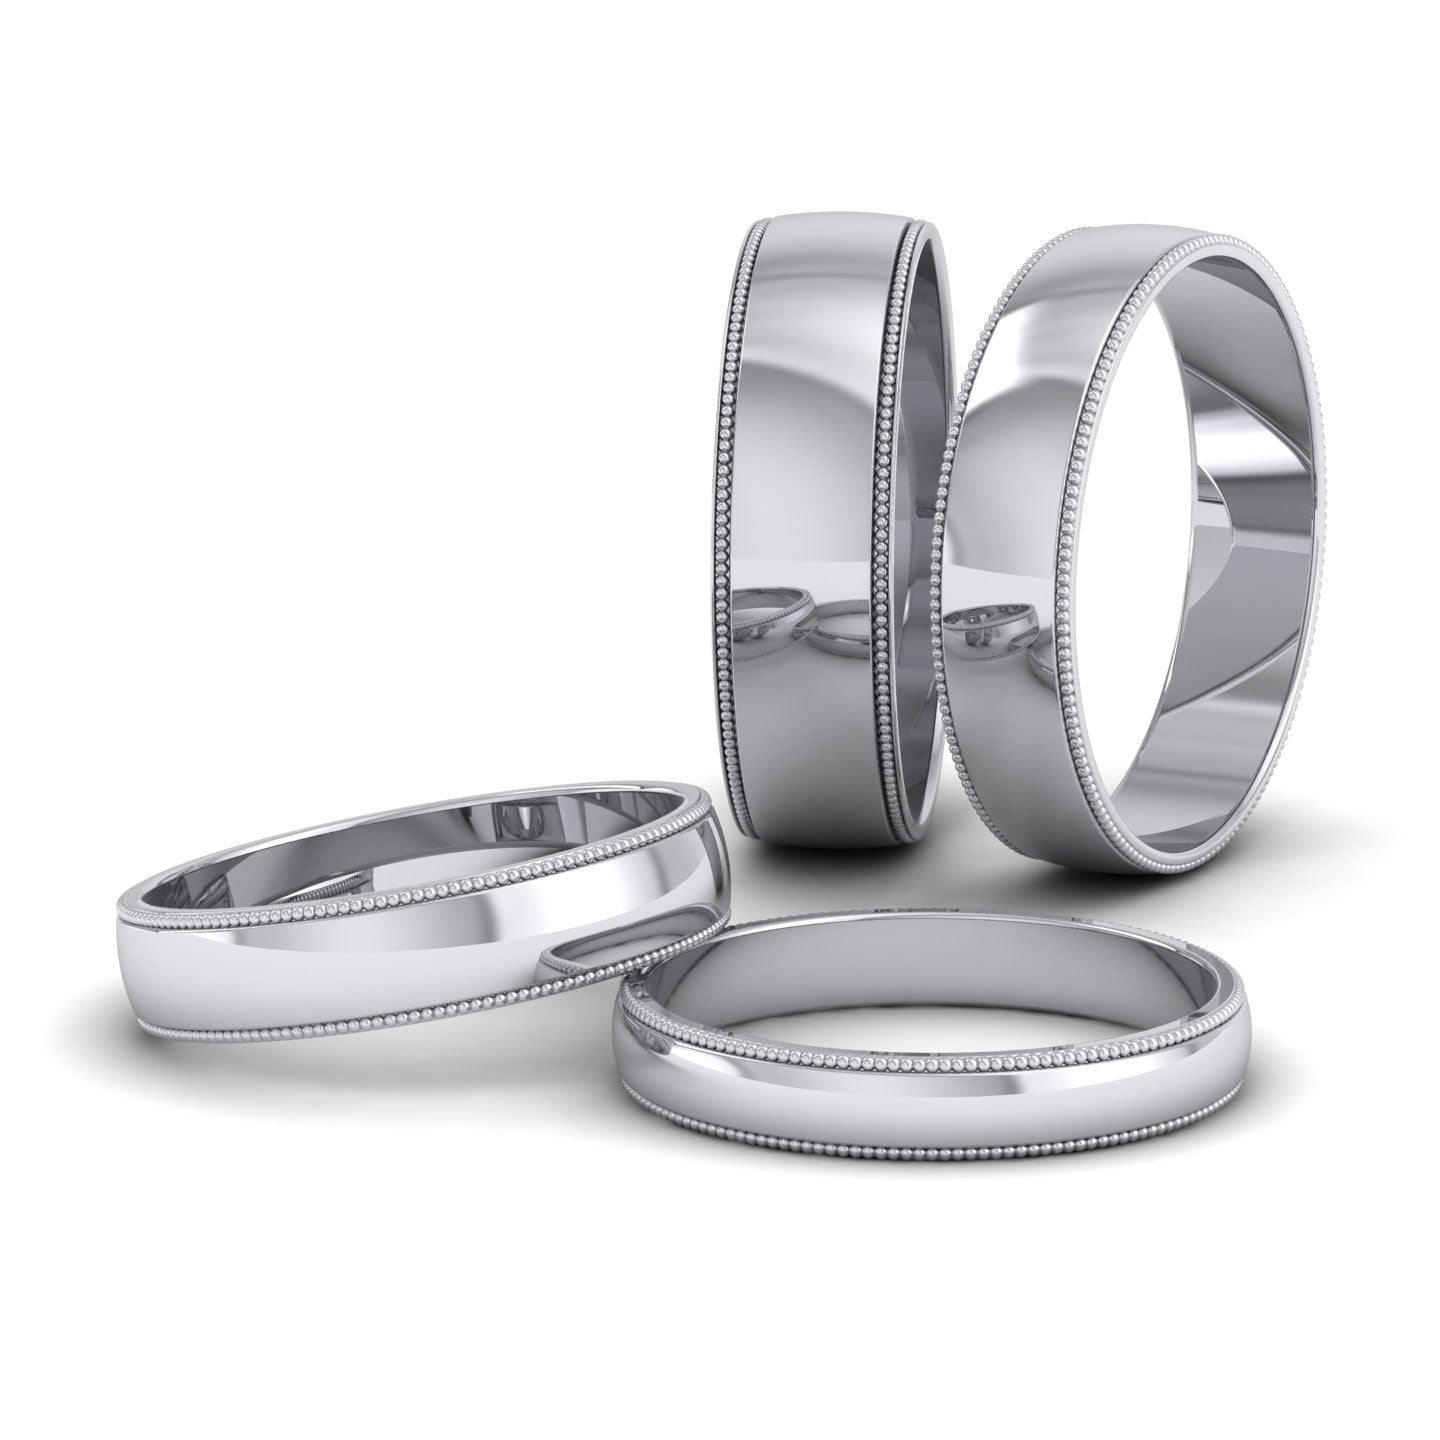 Millgrained Edge 950 Platinum 5mm Wedding Ring